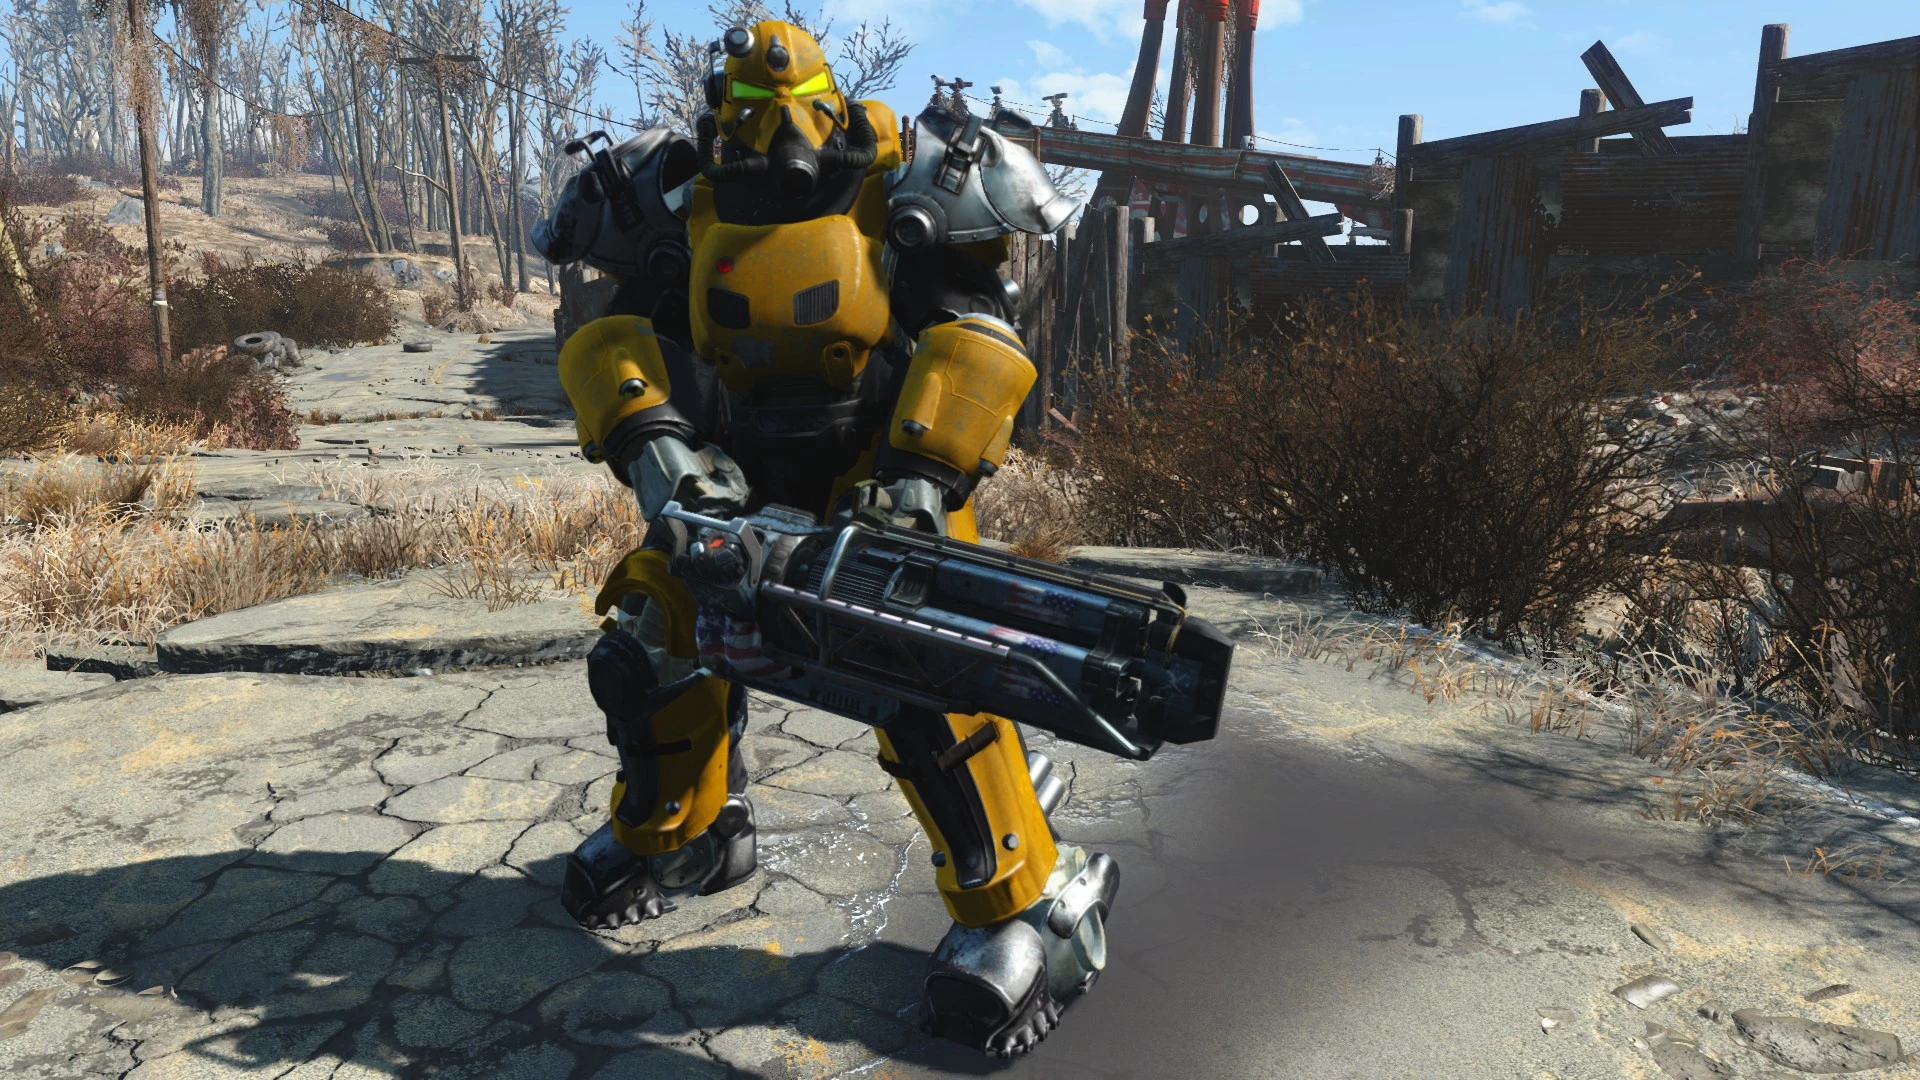 Fallout 4 верстак для роботов все модификации фото 112